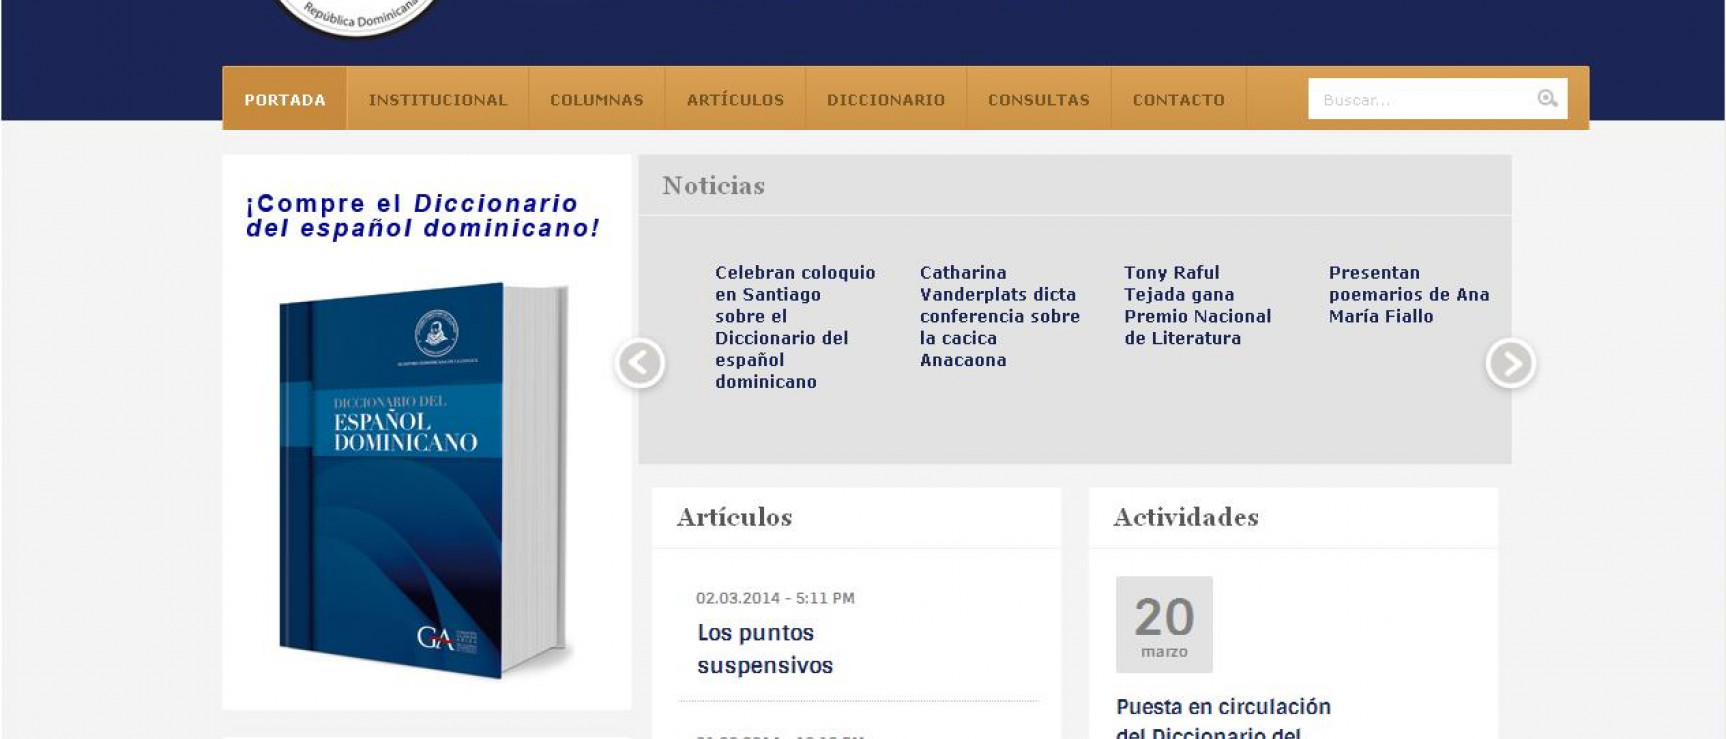 Nueva página web de la Academia Dominicana de la Lengua. http://academia.org.do/web/